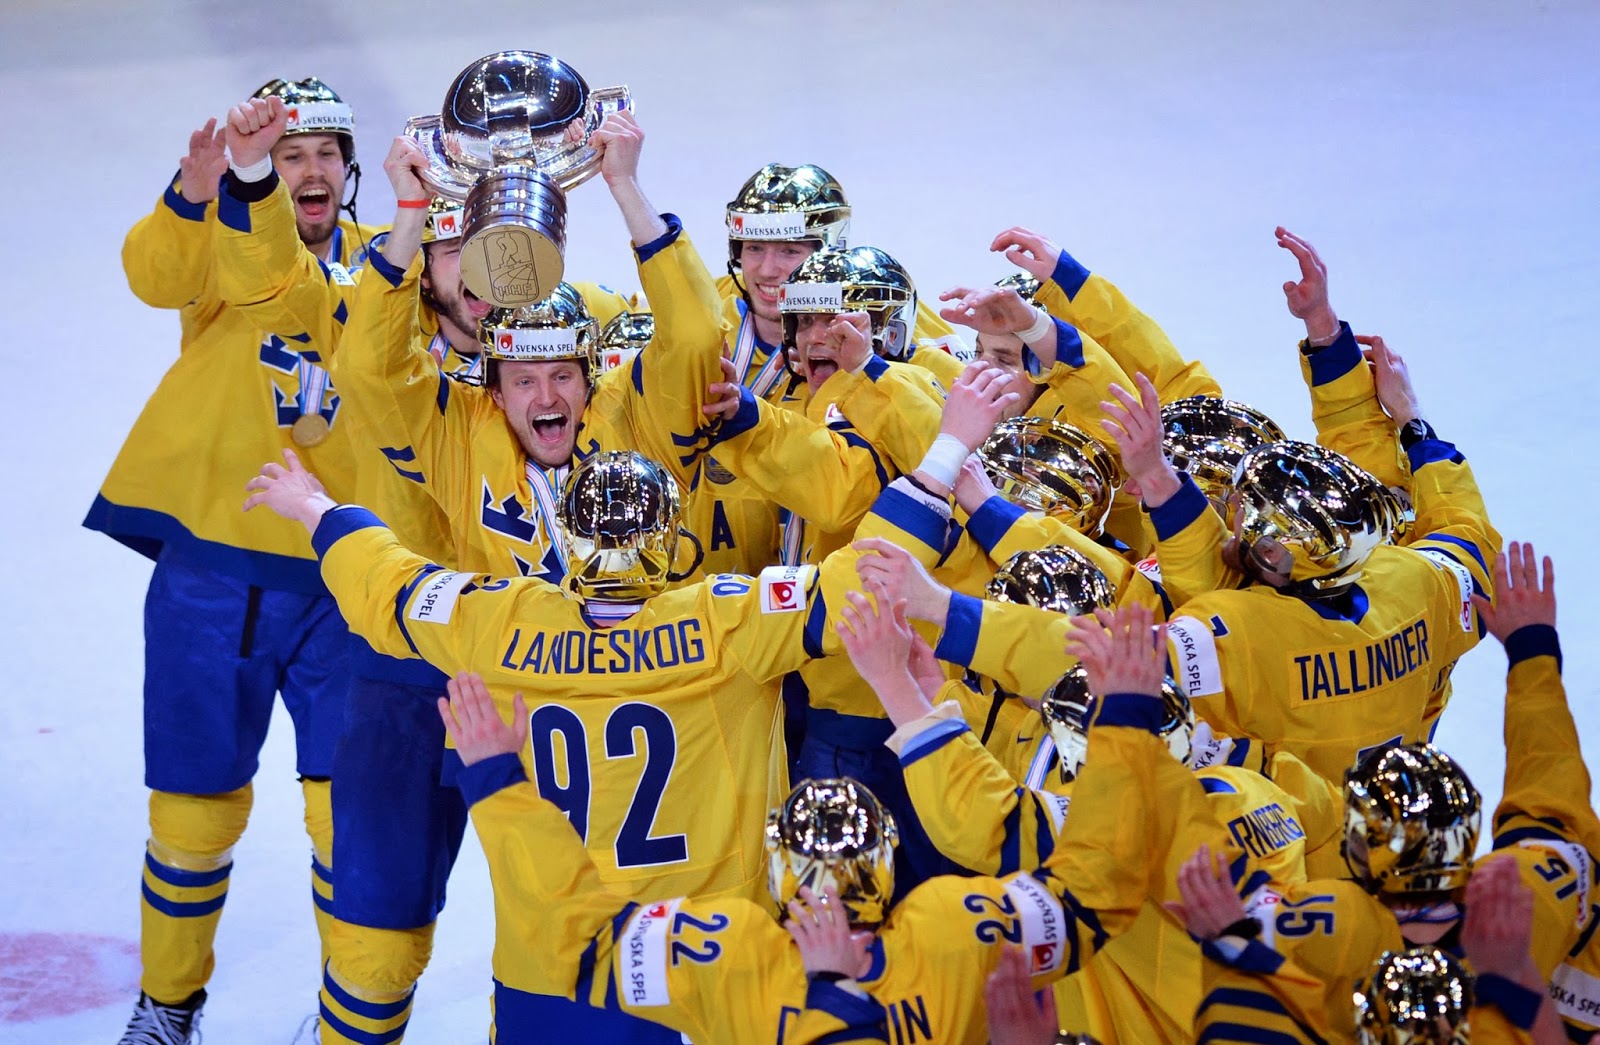 Сколько раз становилась чемпионом сборная команда швеции